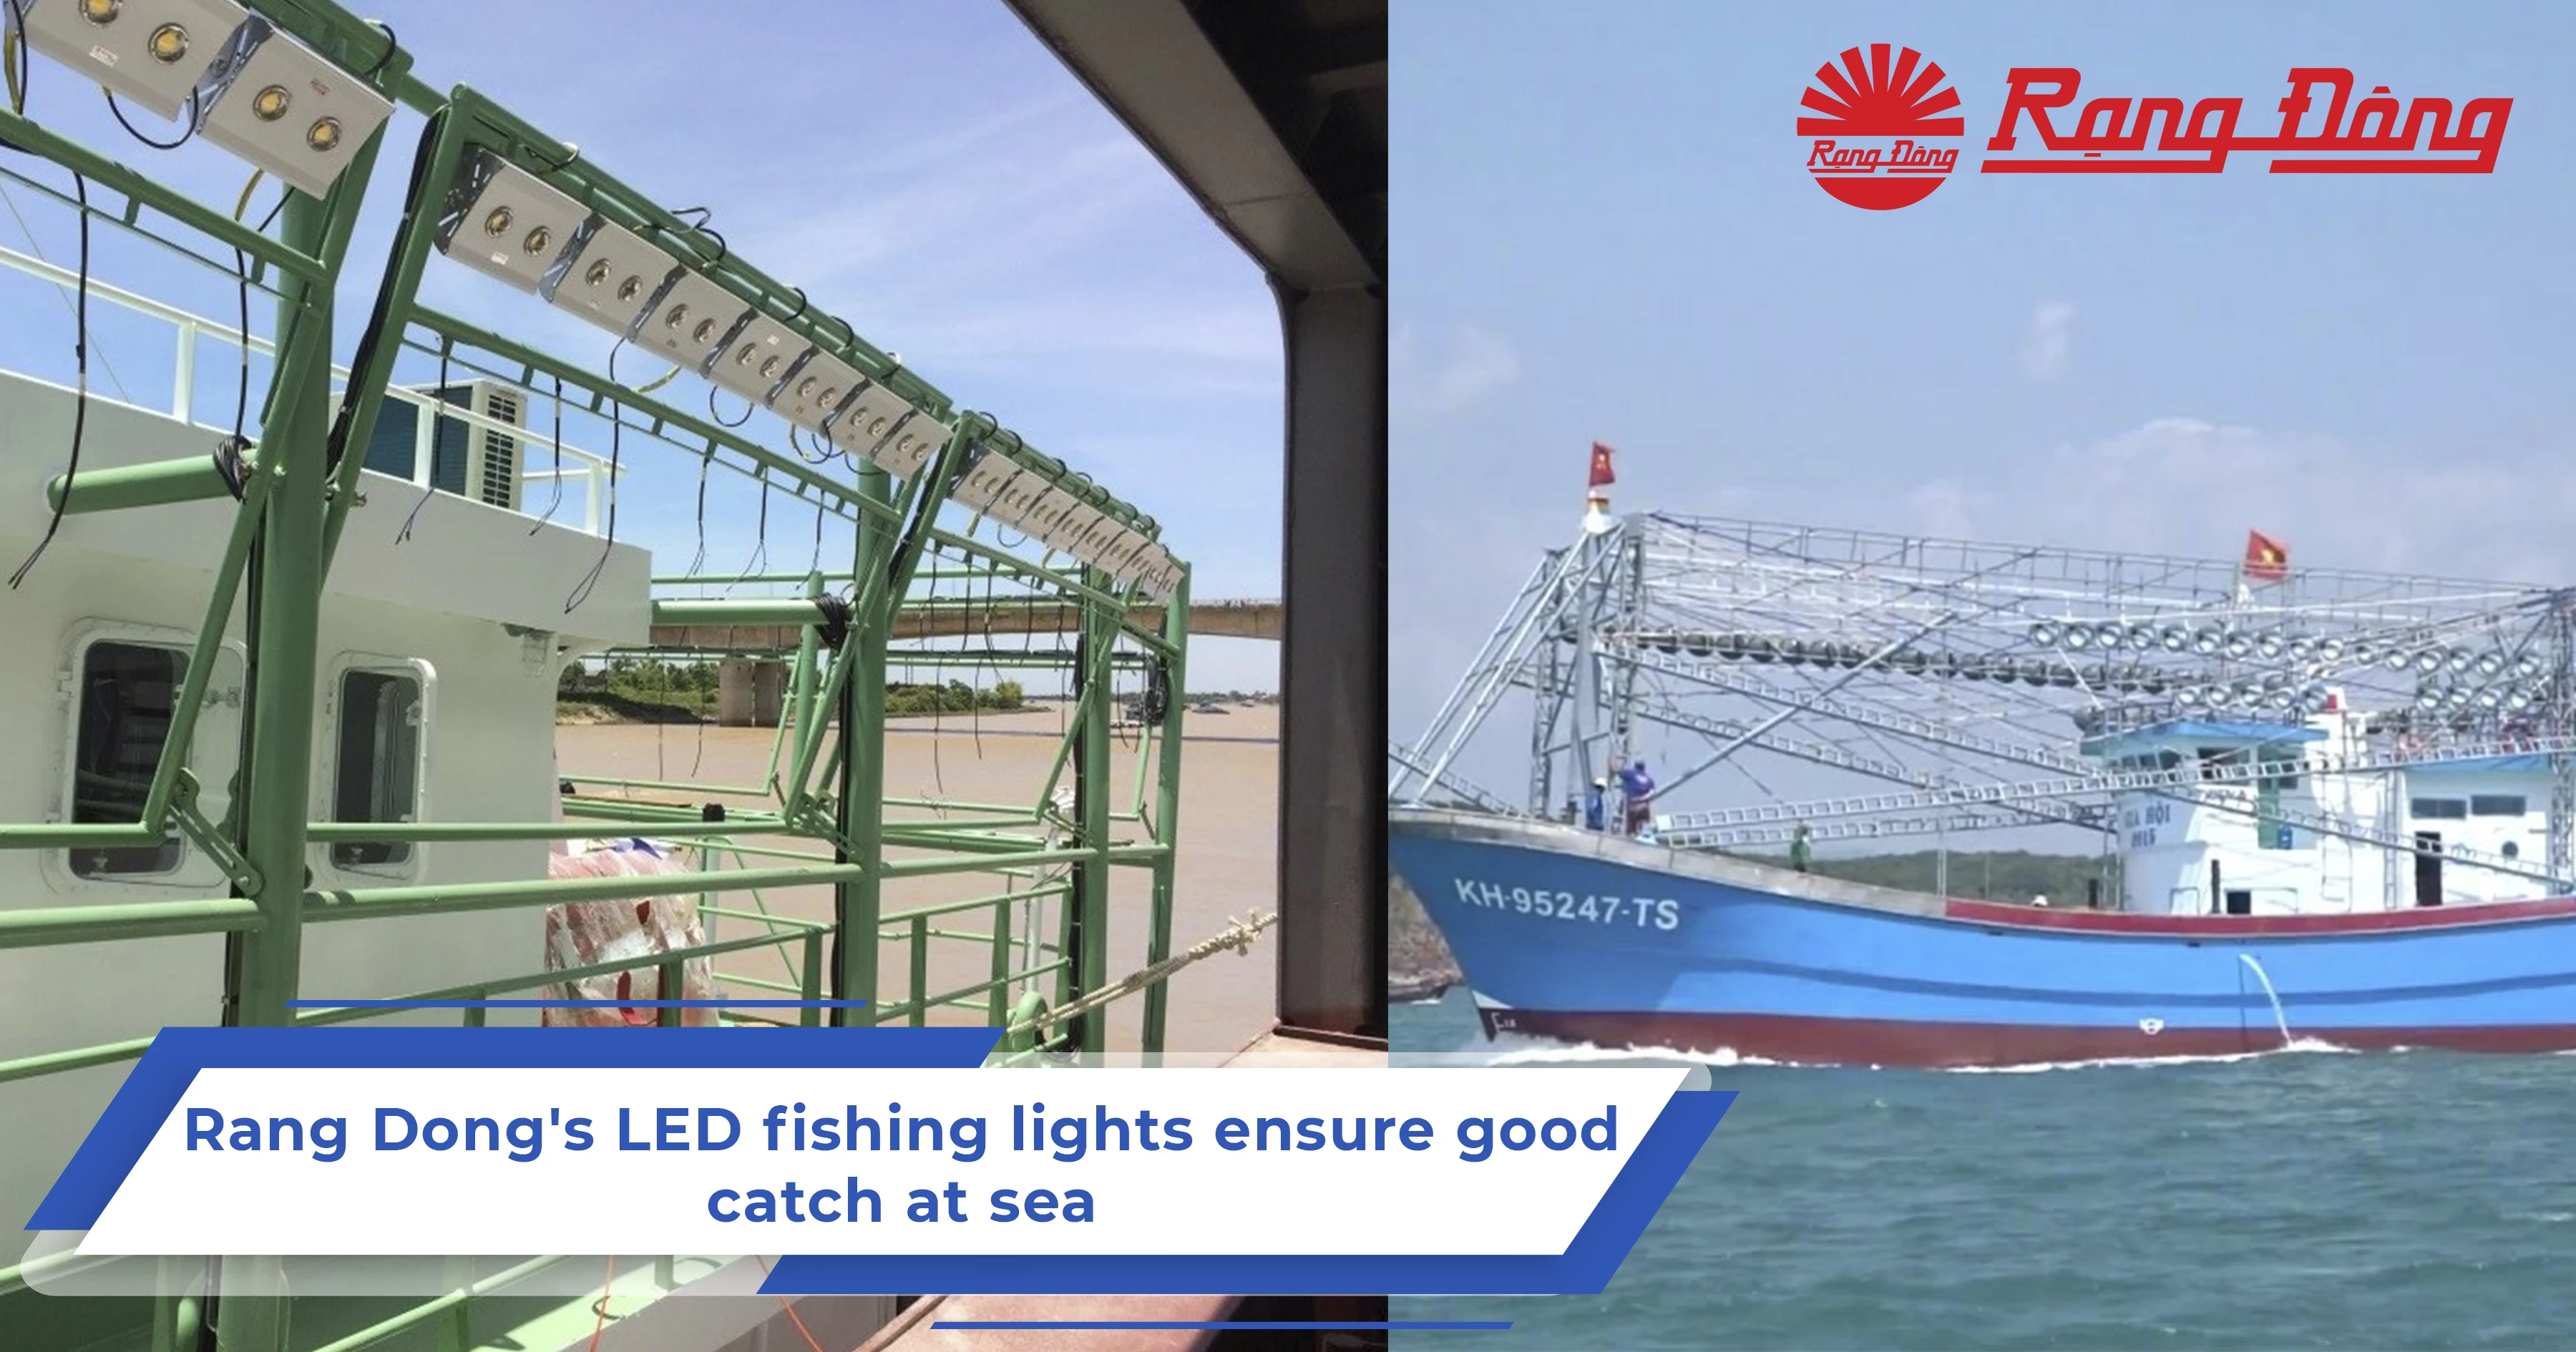 Rang Dong's LED fishing lights ensure good catch at sea